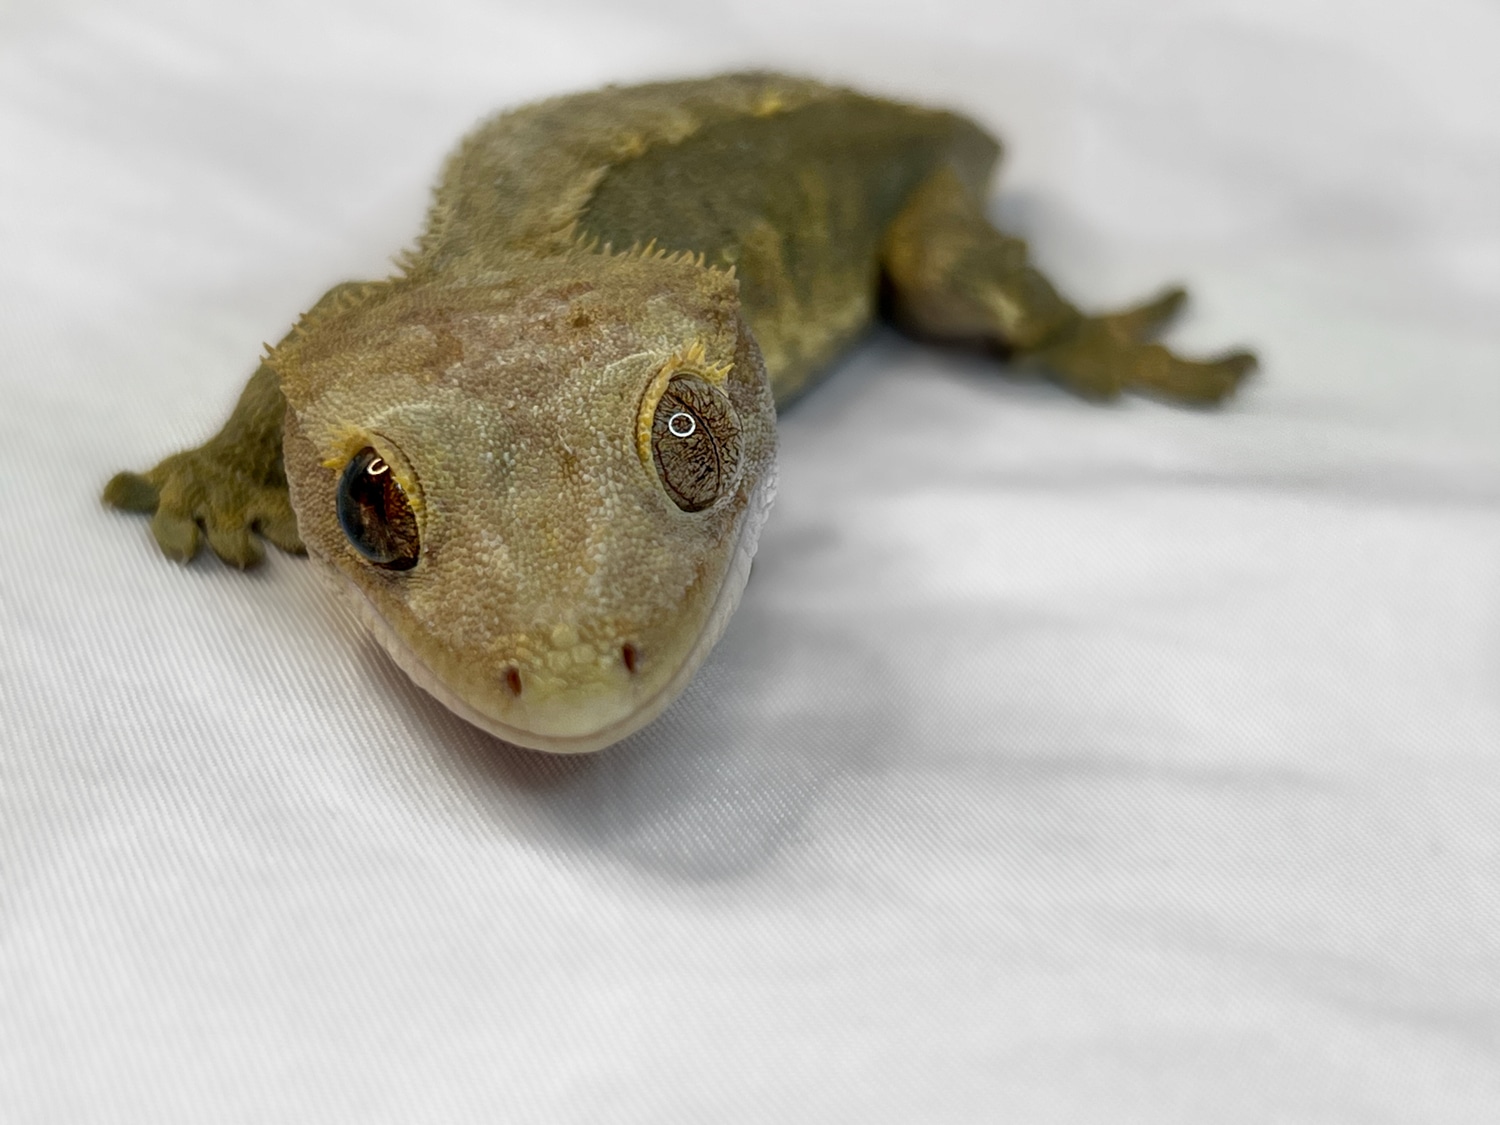 Olive Crested Gecko by Puregoldgeckos